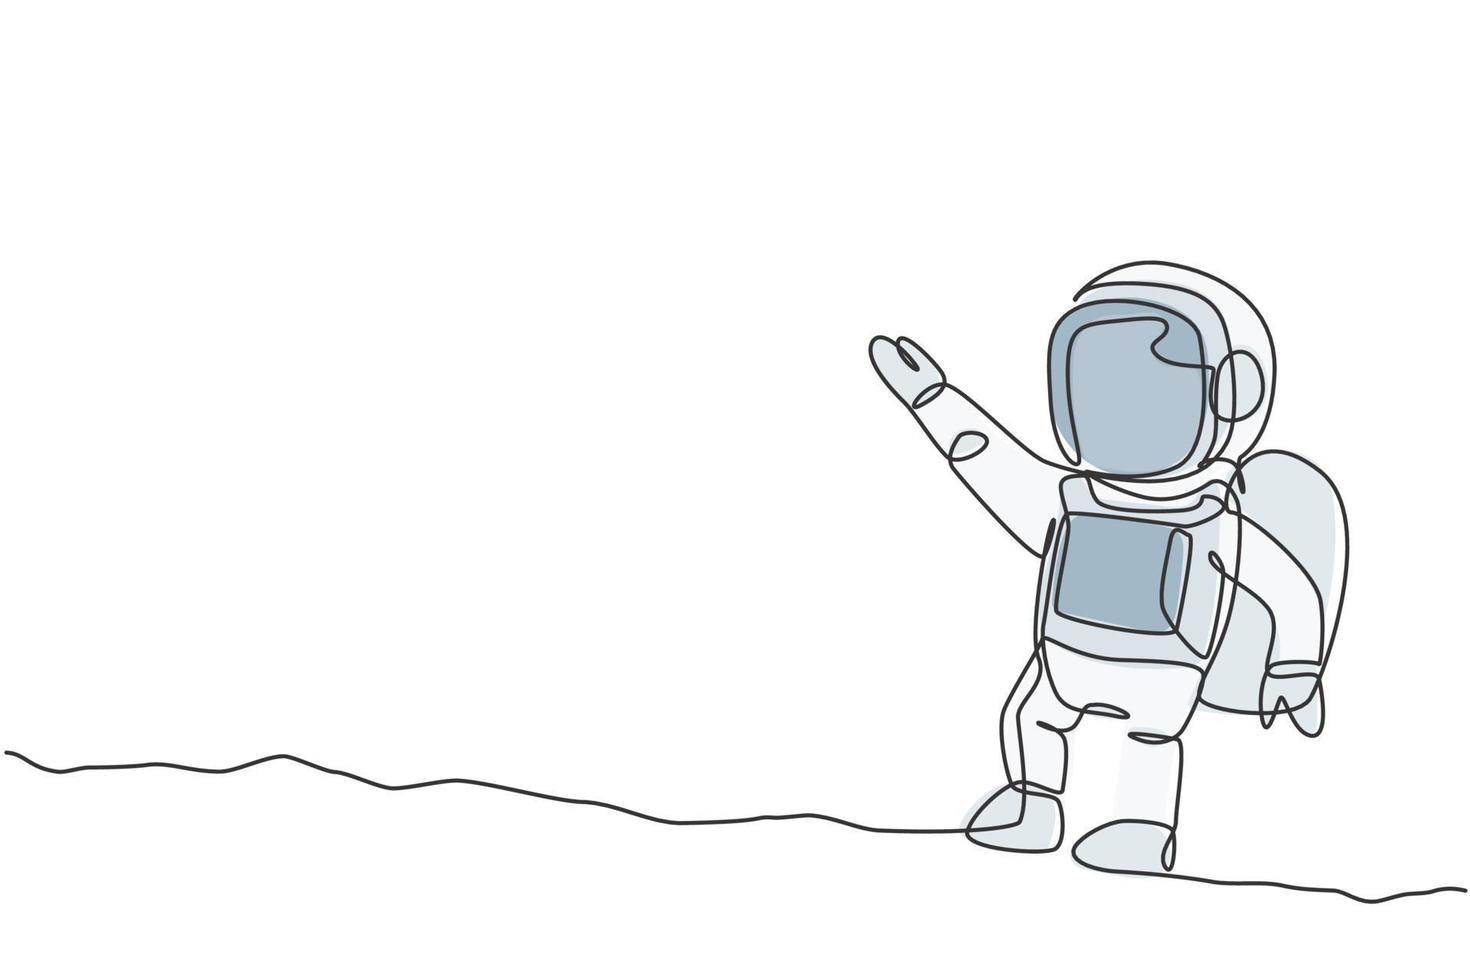 um desenho de linha contínua de um jovem cientista astronauta explorando o espaço sideral em estilo retro. conceito de descoberta do cosmos do astronauta. ilustração em vetor desenho gráfico de linha única dinâmica